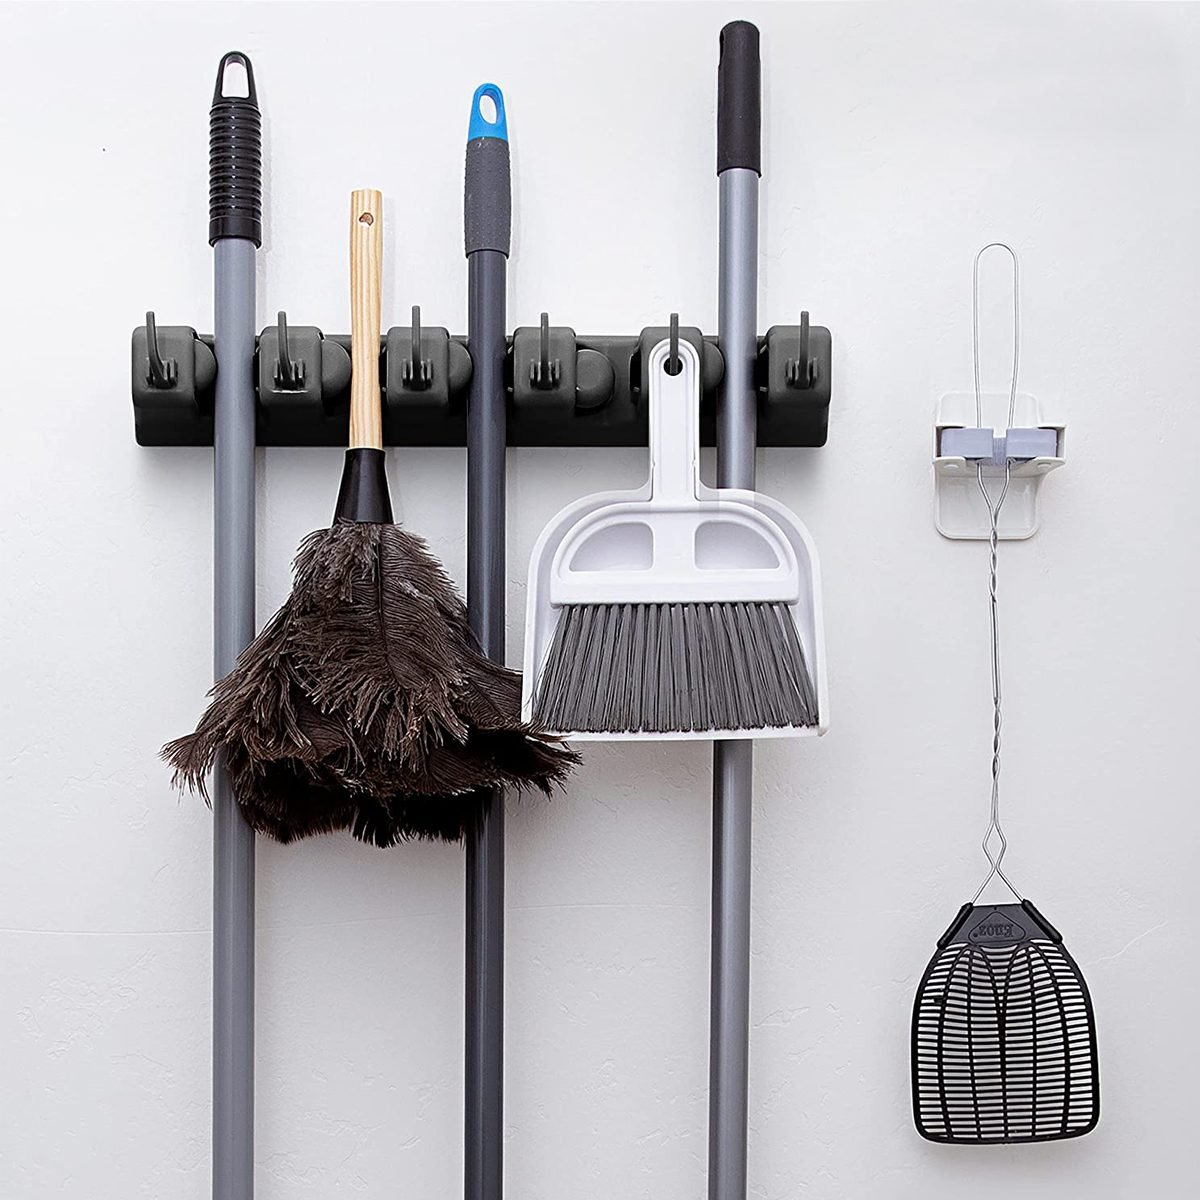 Broom And Mop Storage Ideas  Mop storage, Broom storage, Broom